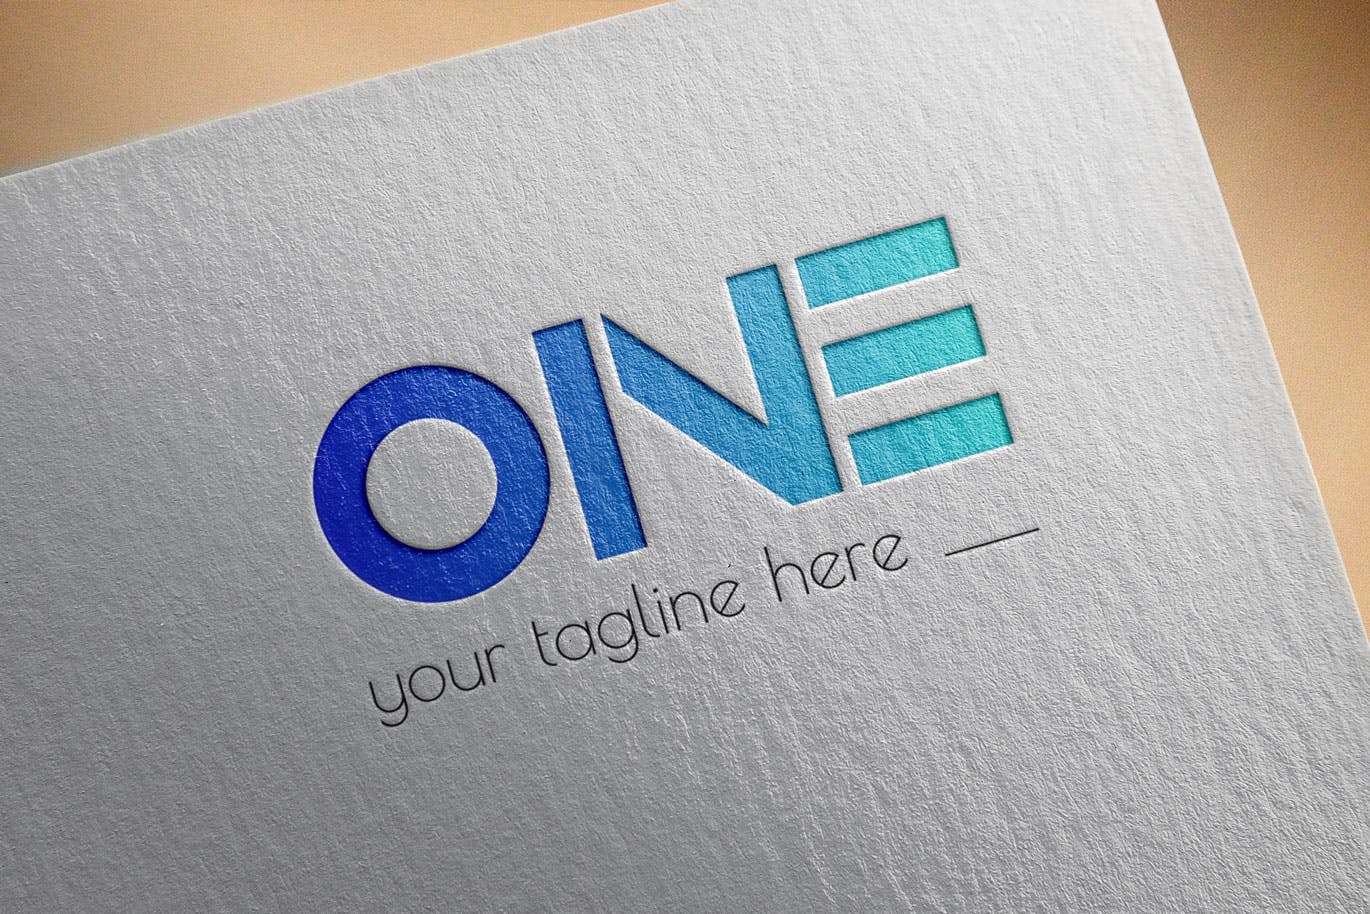 创意ONE文字Logo设计素材库精选模板 One Modern Logo Template插图(2)